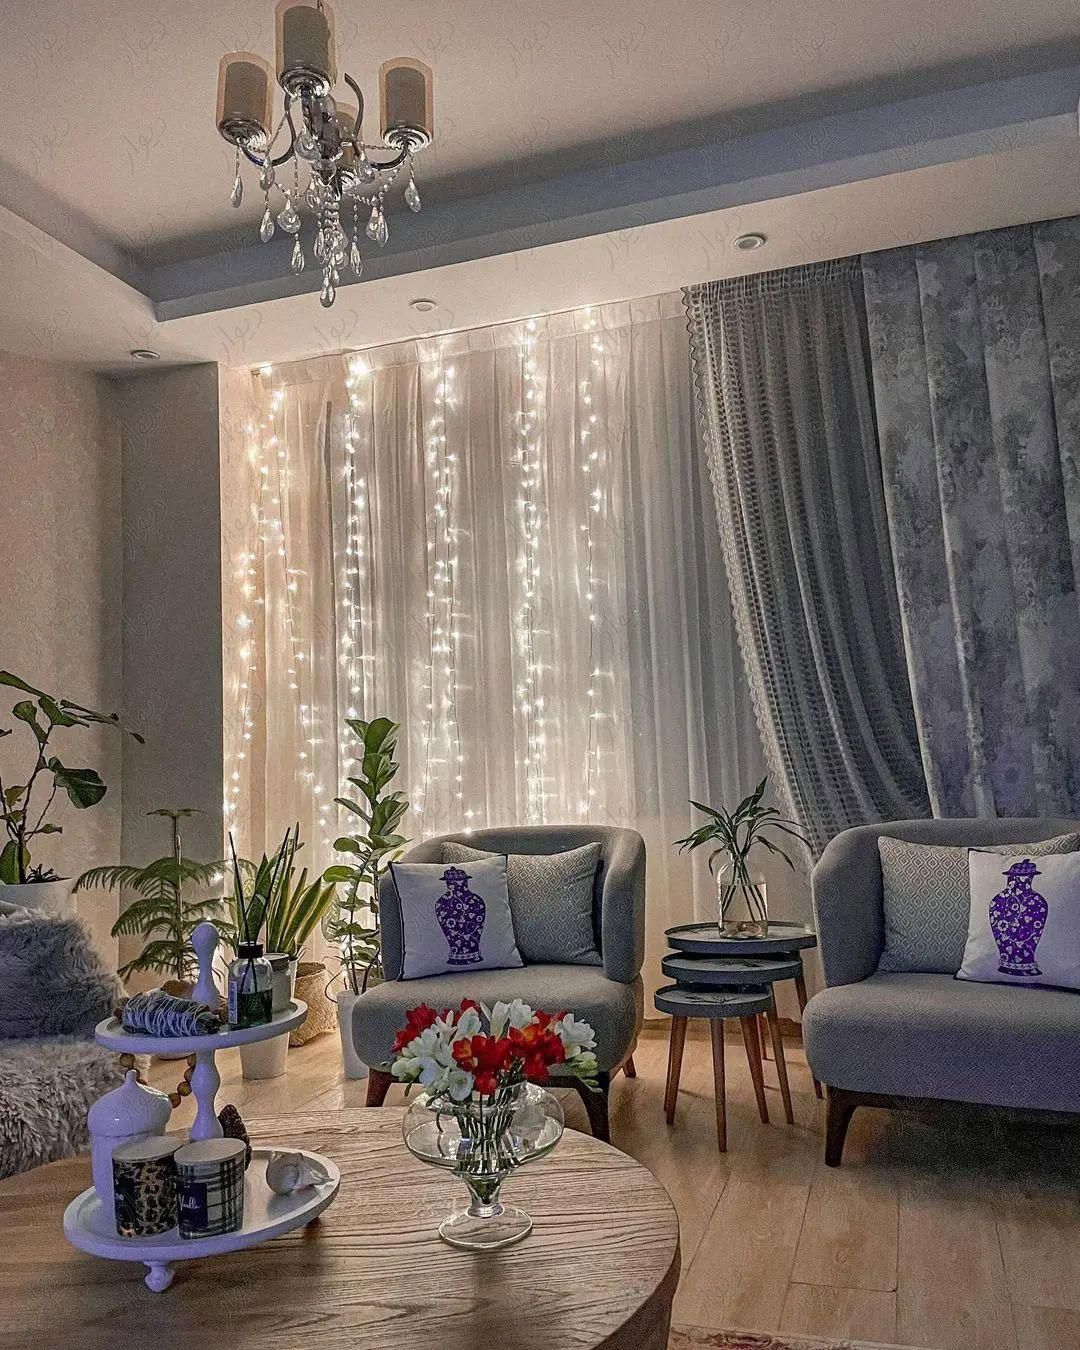 آپارتمان 98 متری / دو کله نور|فروش آپارتمان|اصفهان, مفتح|دیوار